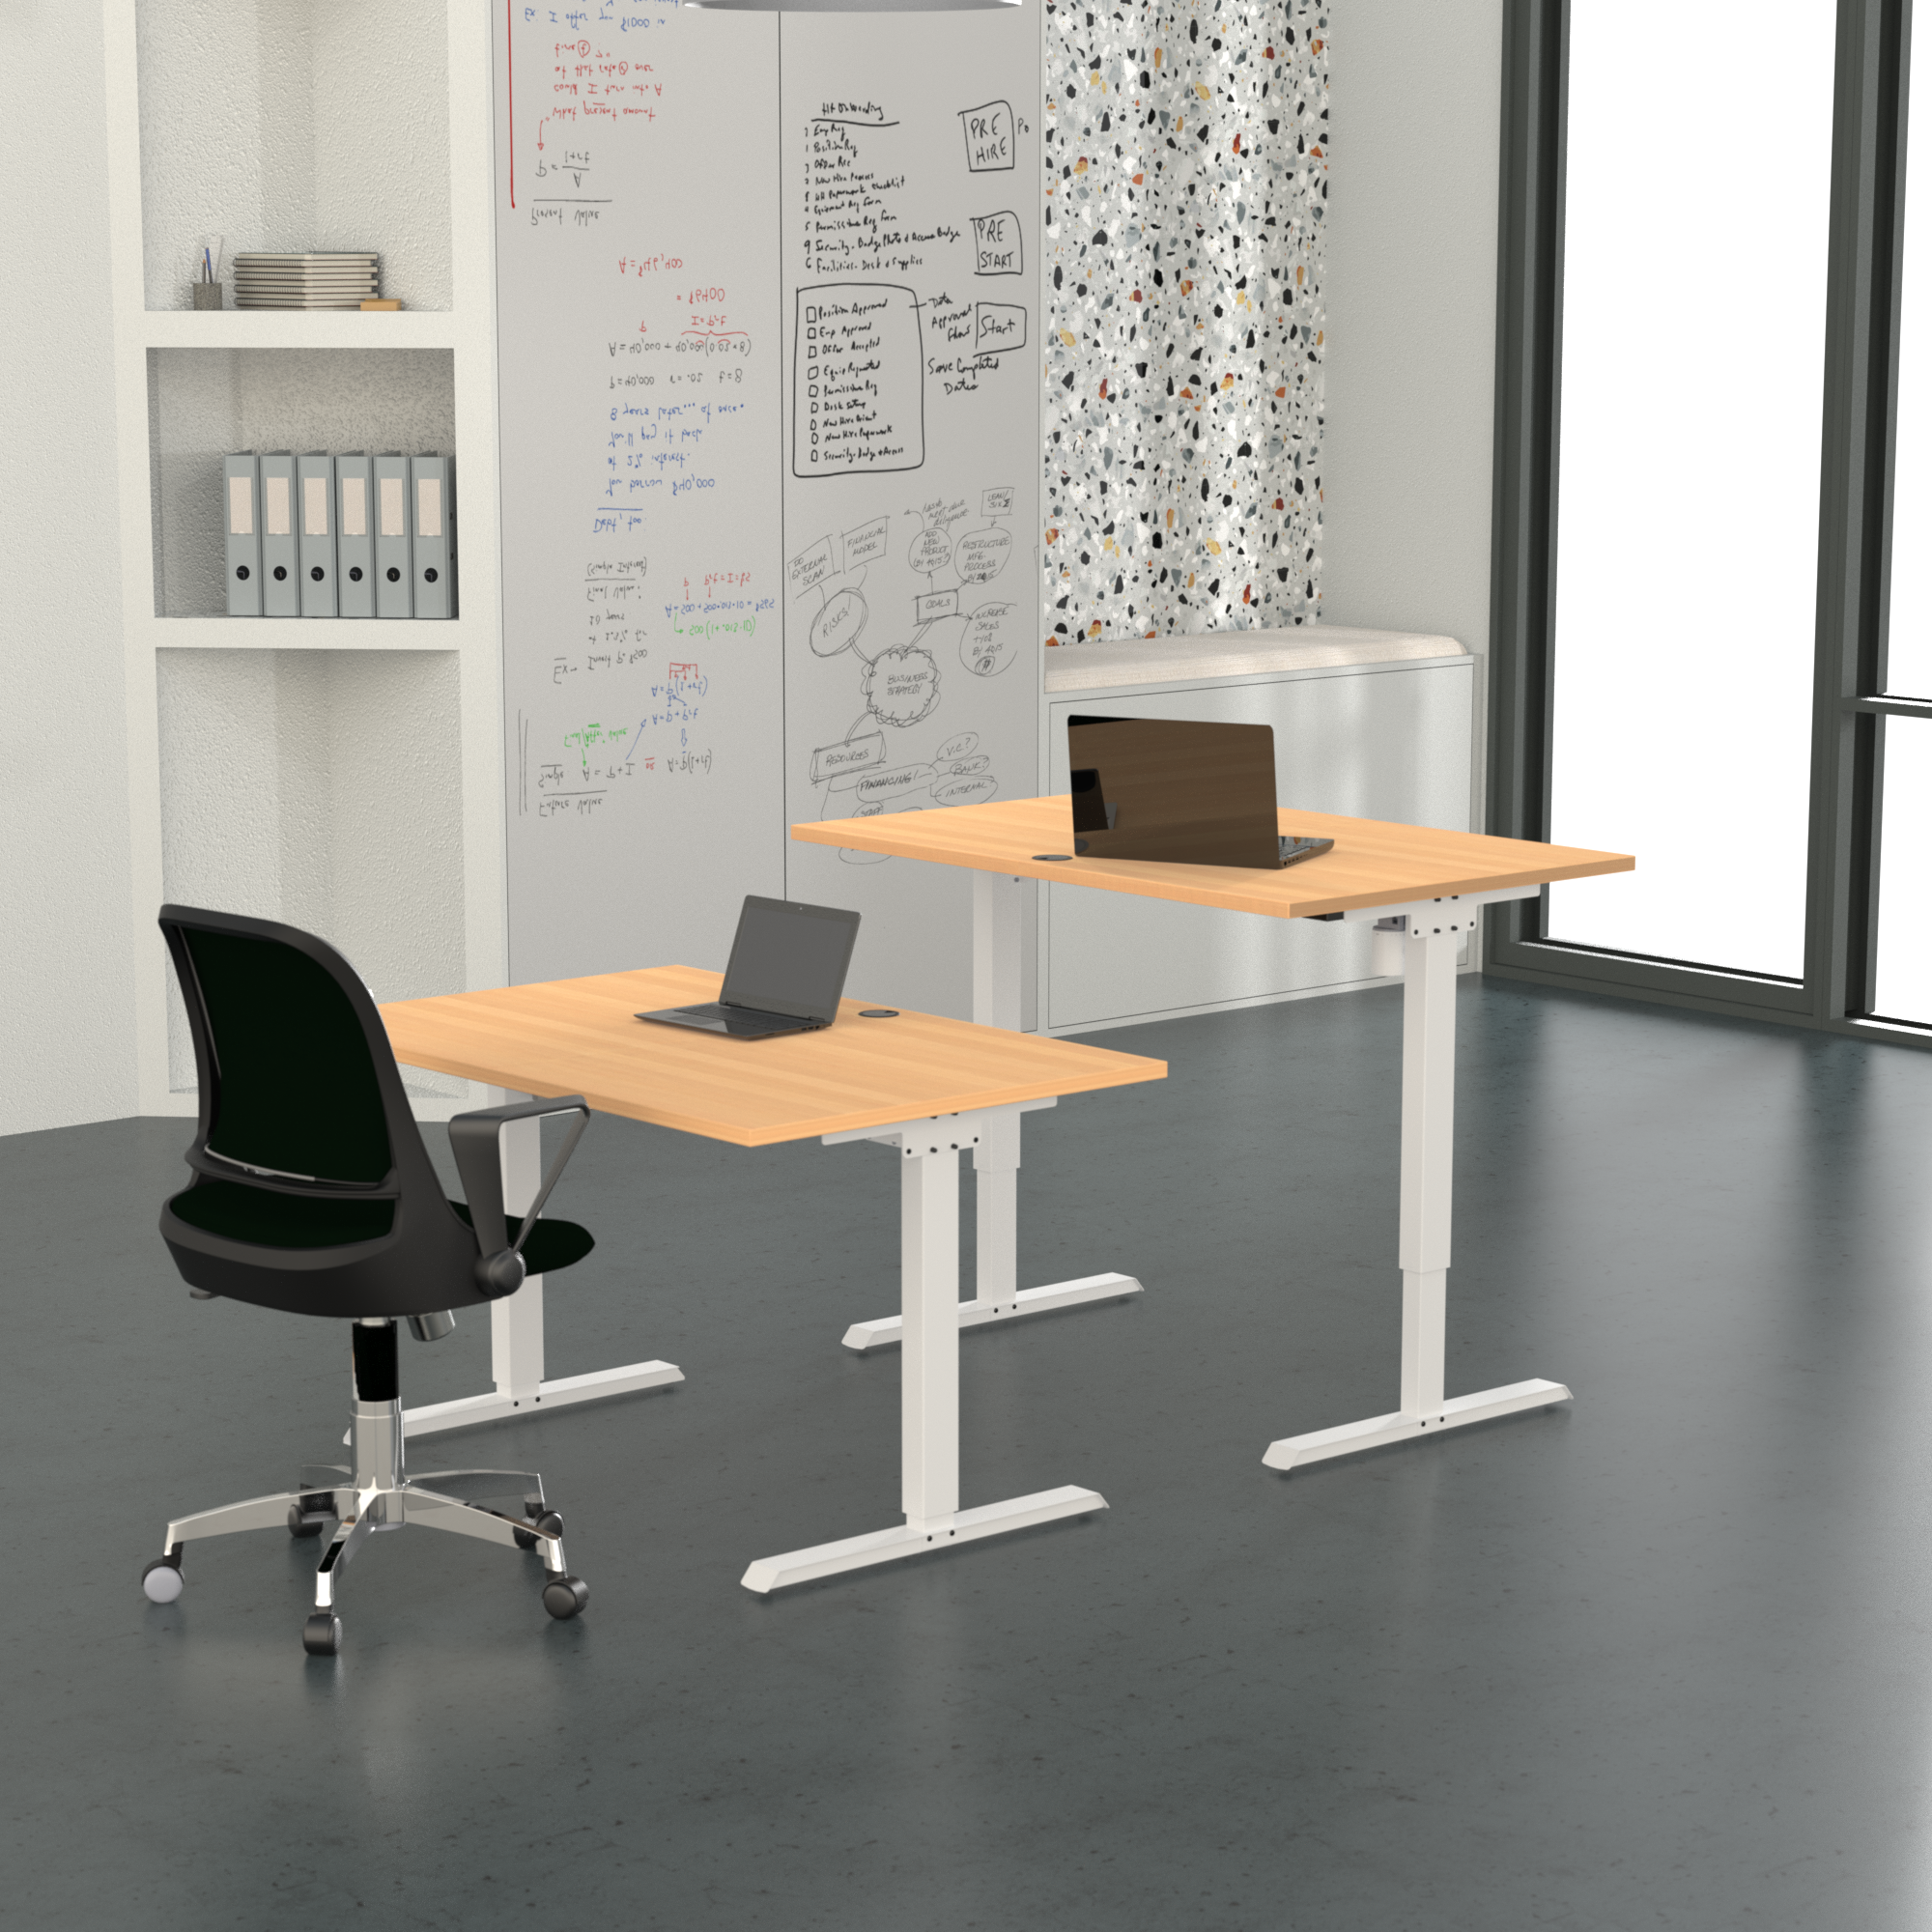 Schreibtisch steh/sitz | 120x80 cm | Buche mit weißem Gestell